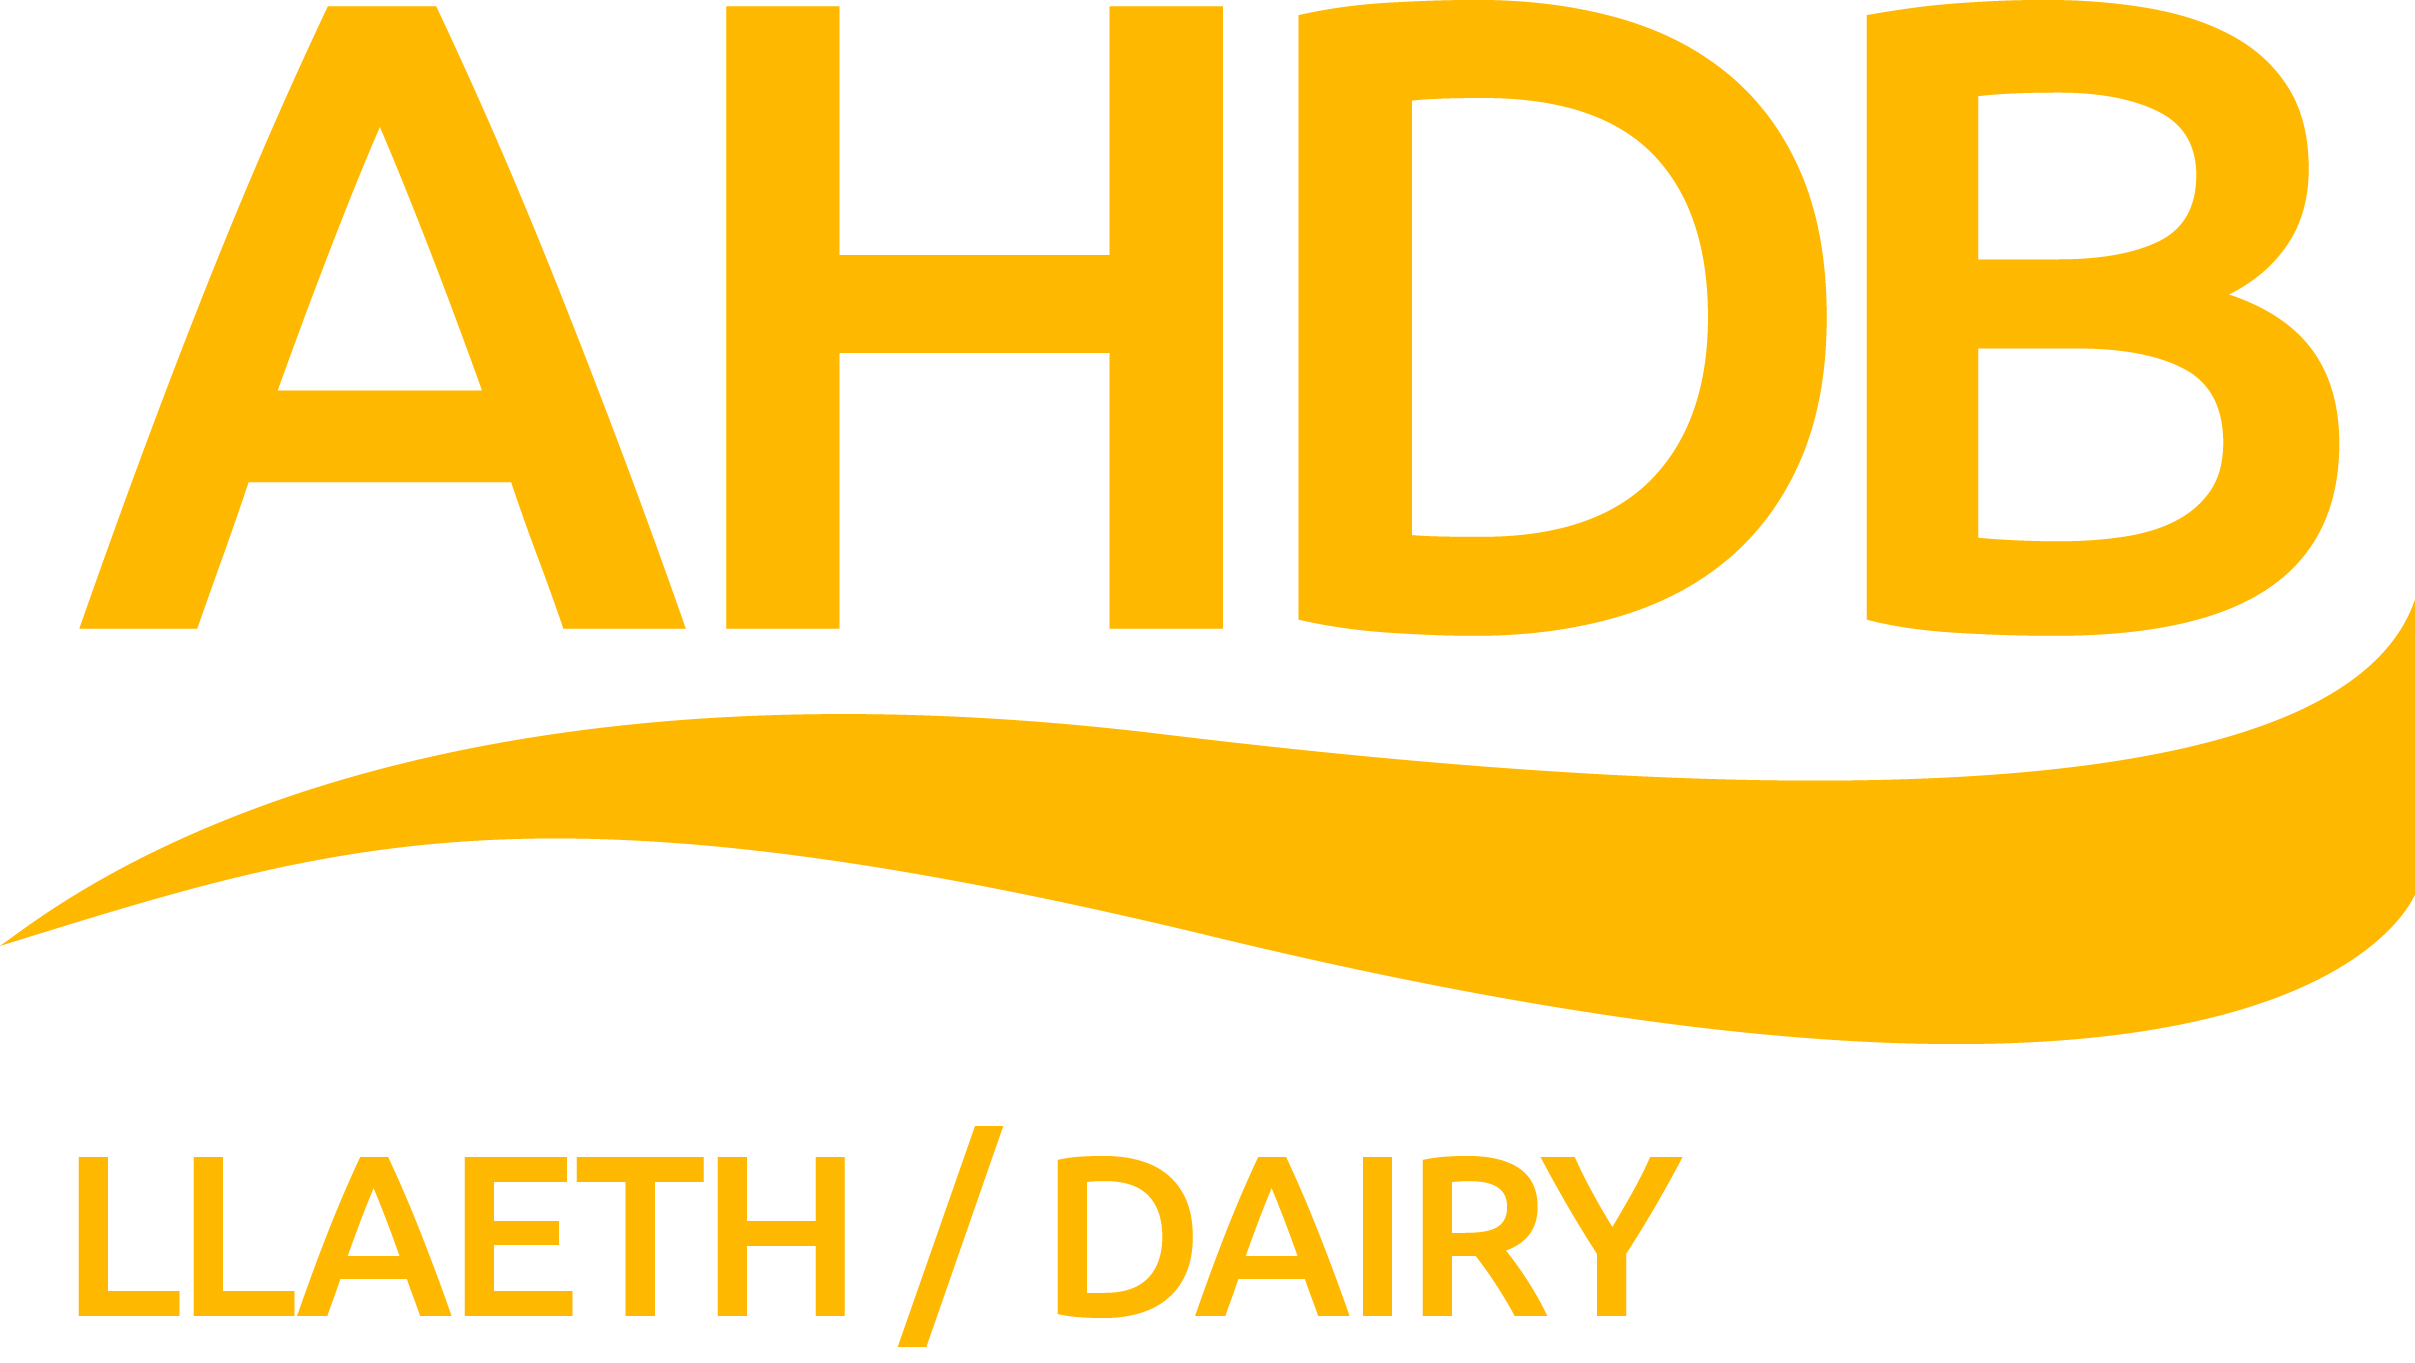 AHDB Llaeth Dairy logo_cmyk trimmed.jpg